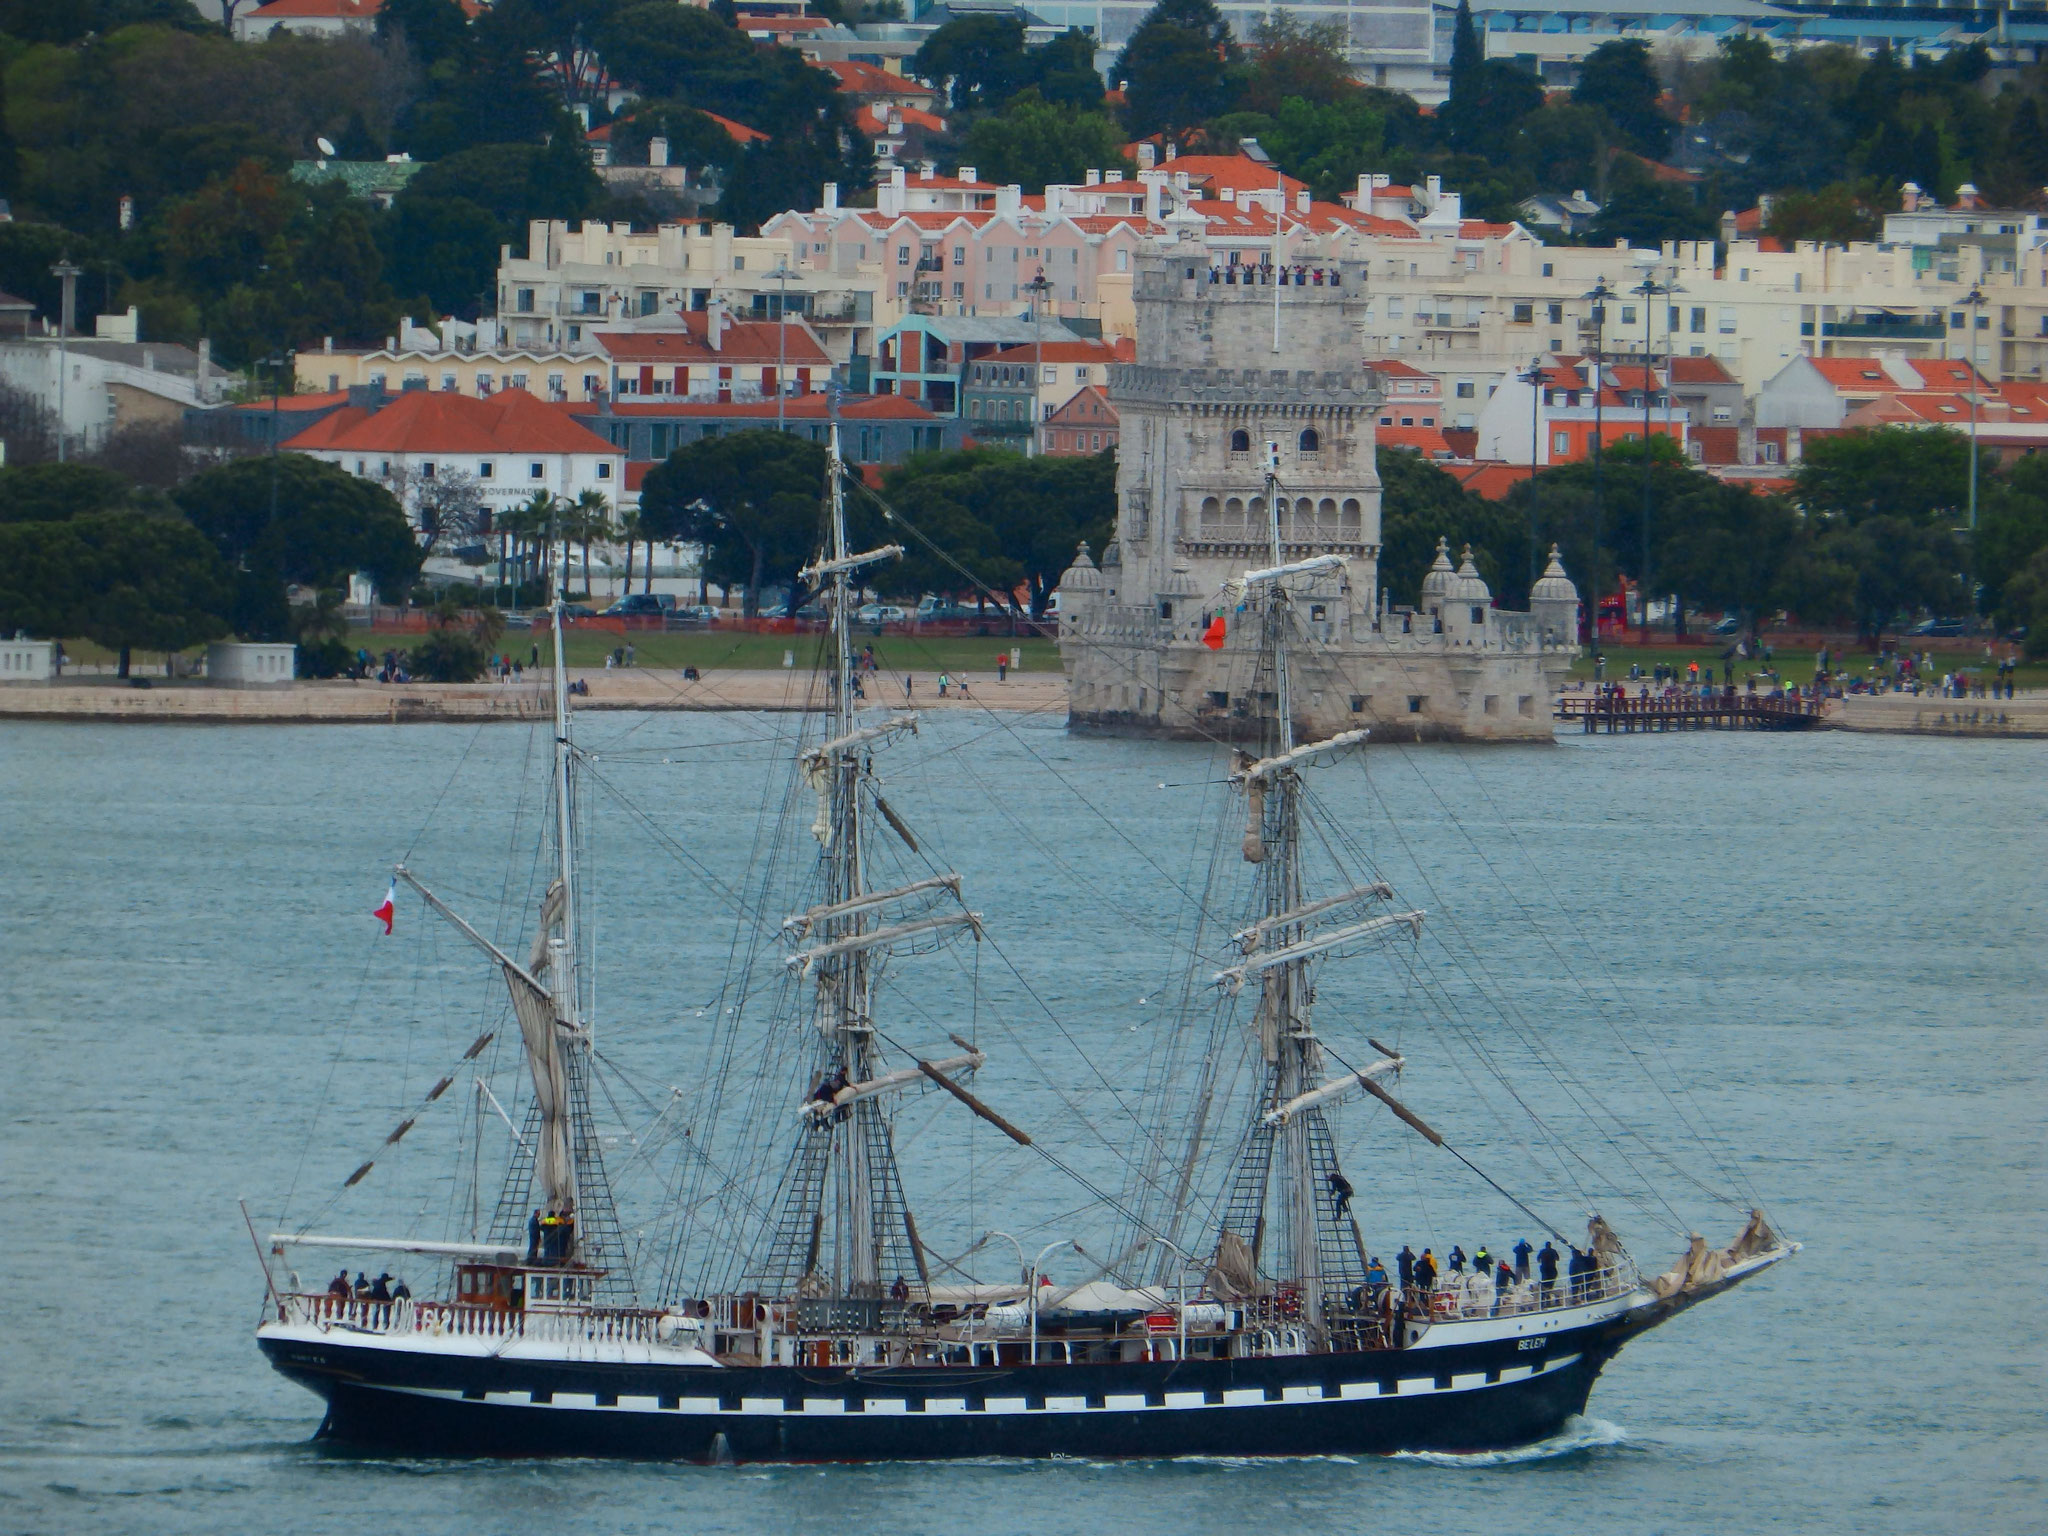 L'arrivée à Lisbone avec la célèbre tour éponyme du nom du bateau